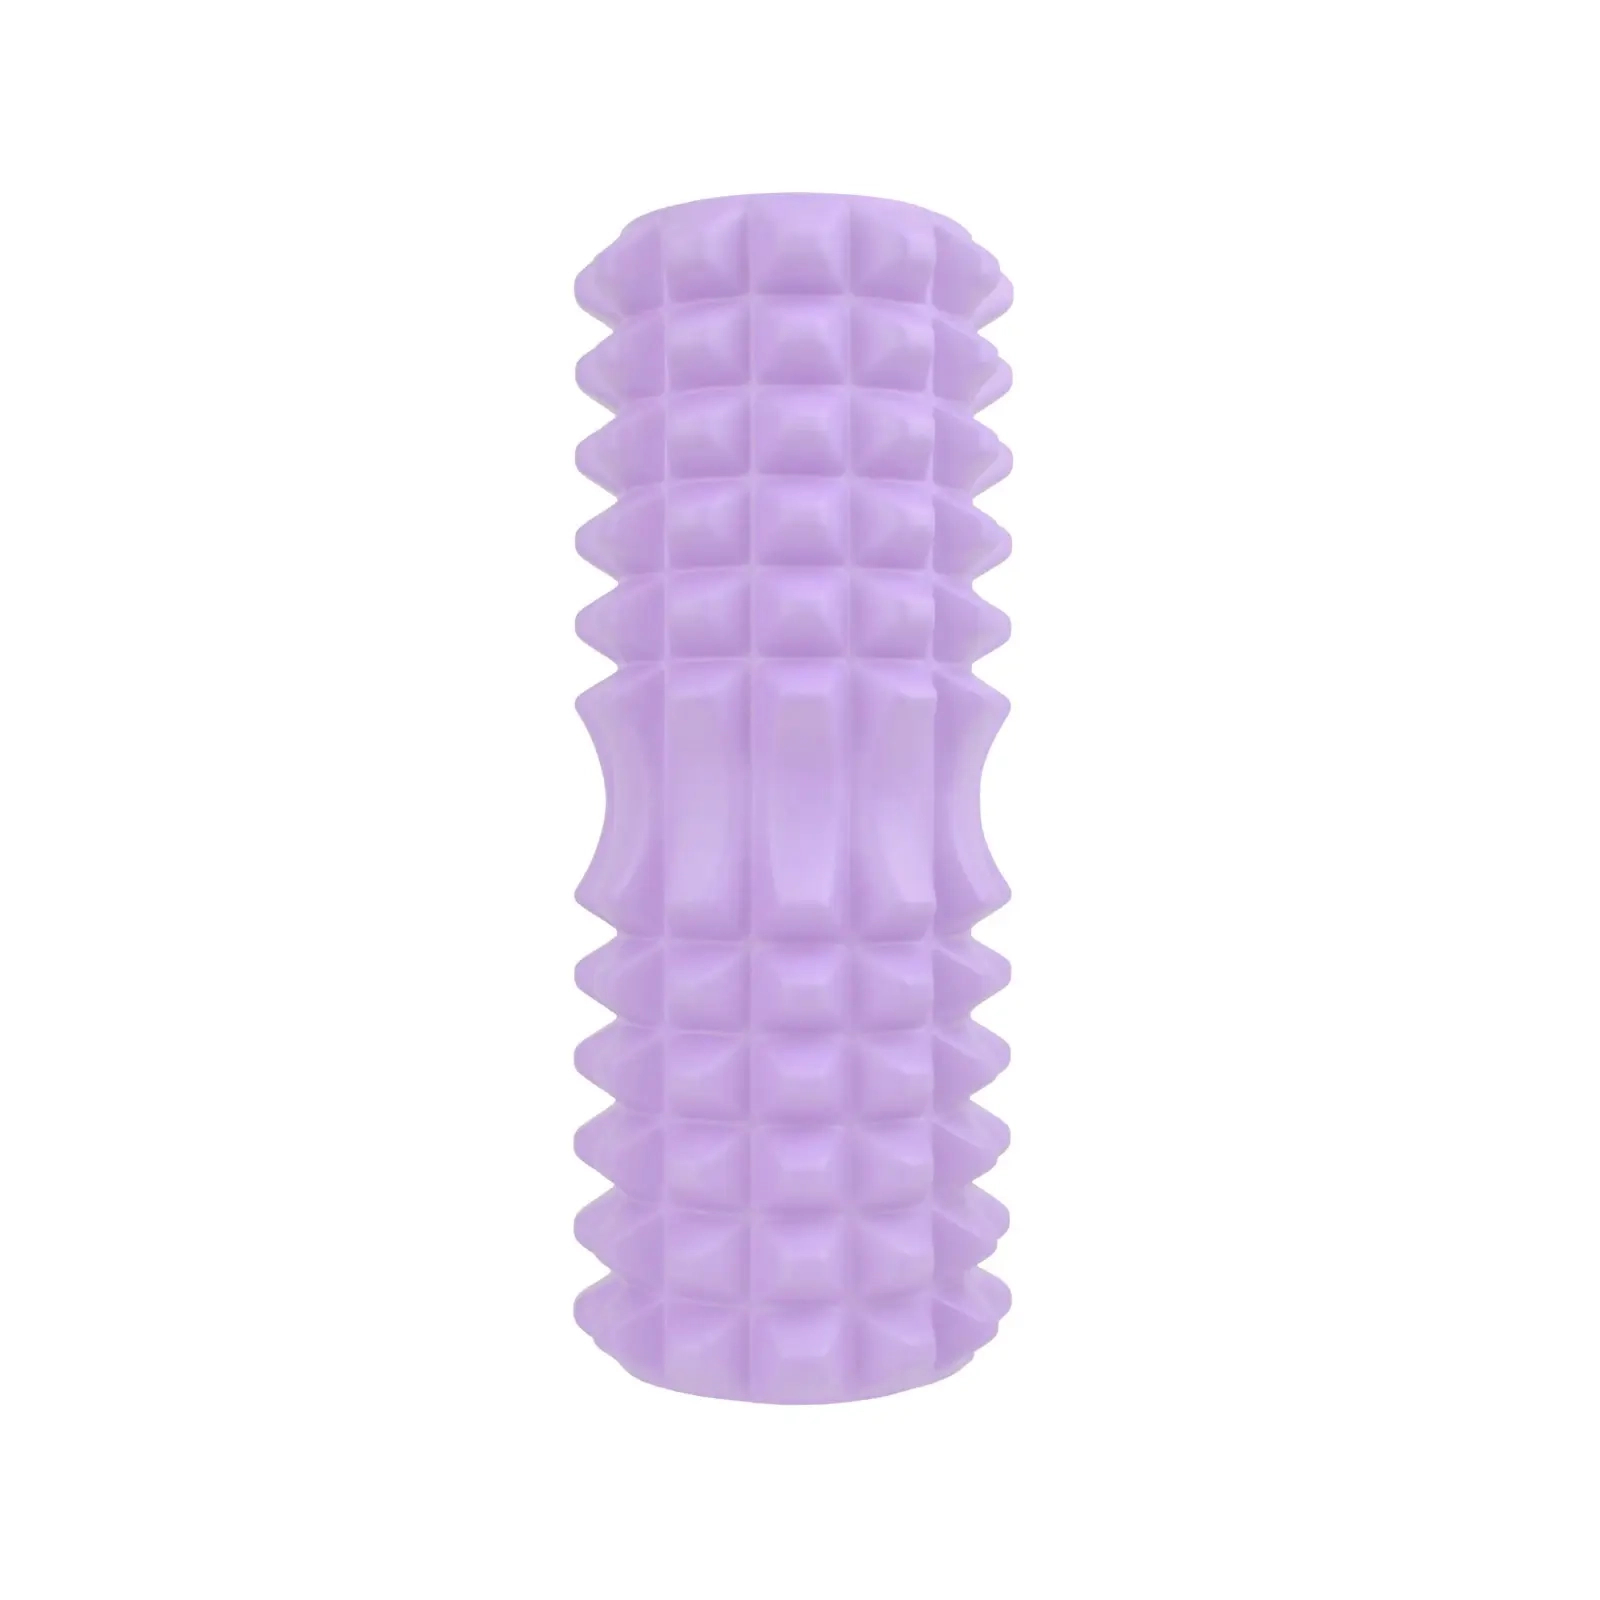 Масажный ролик U-Powex UP_1010 EVA foam roller 33x14см Type 2 Purpl (UP_1010_T2_Purple) изображение 2